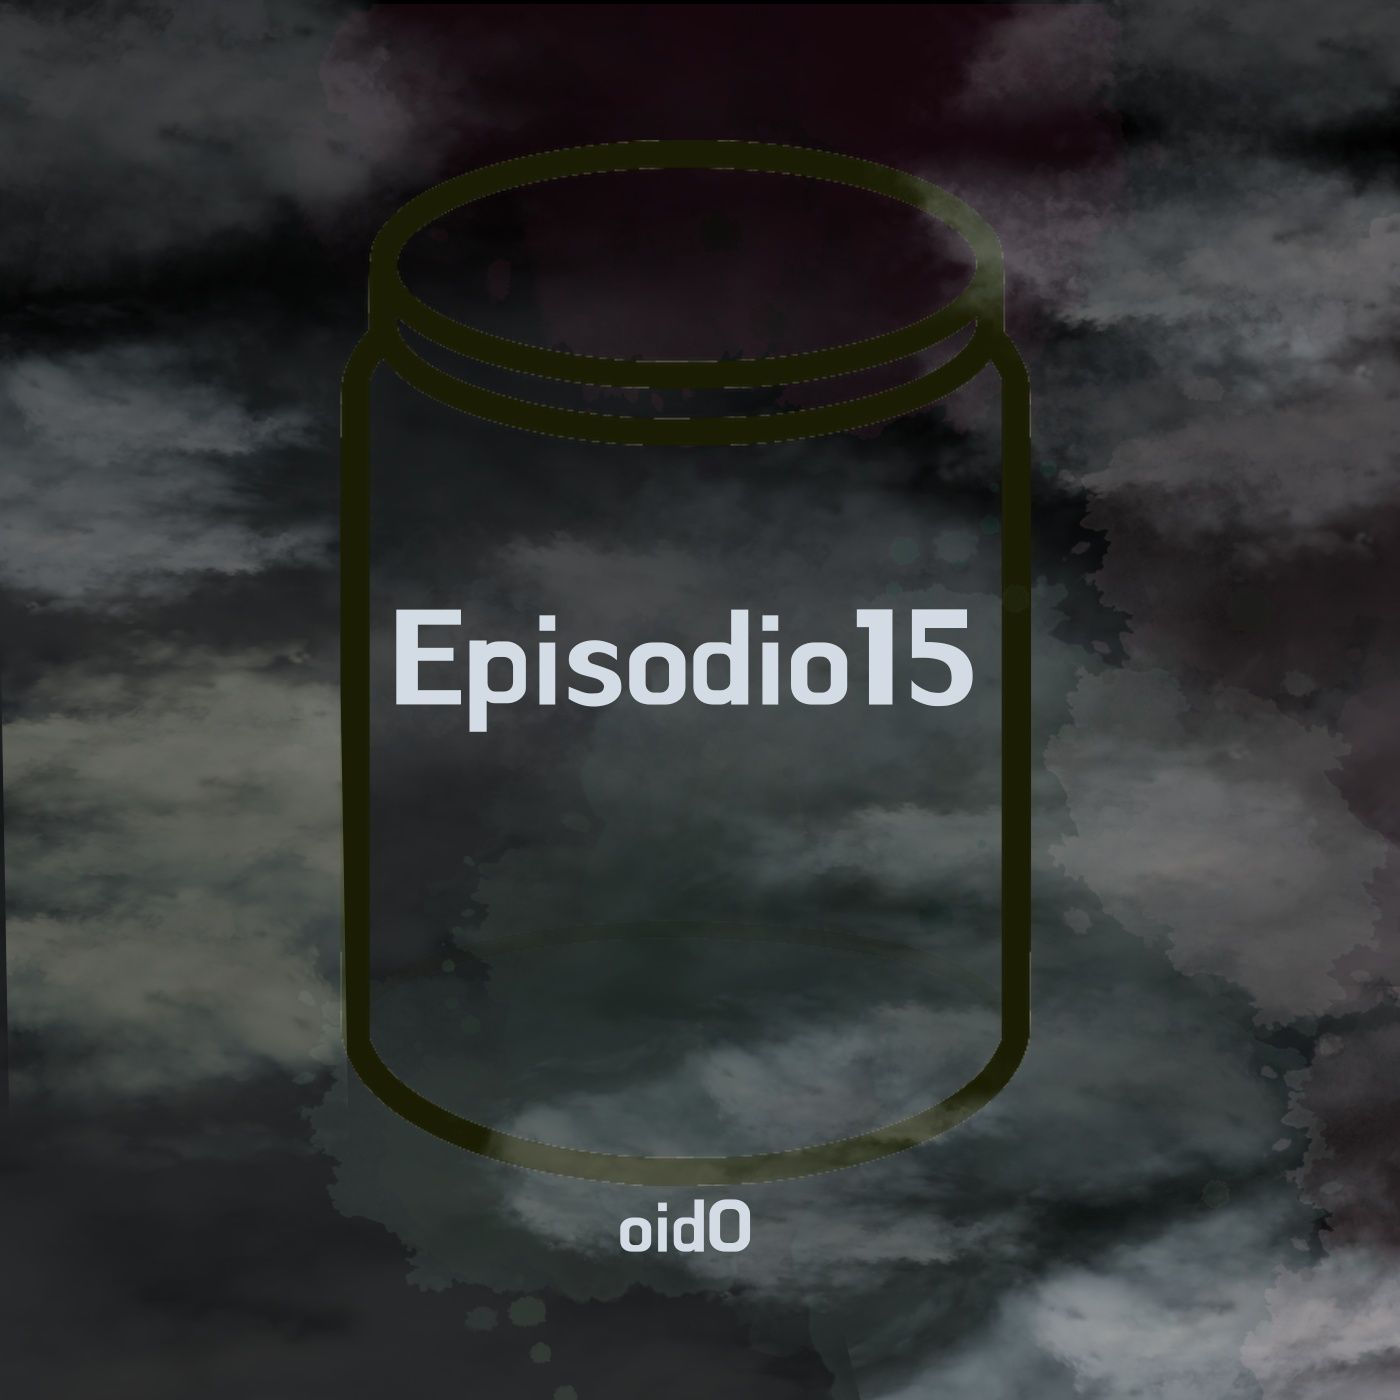 episodio 15: oidO